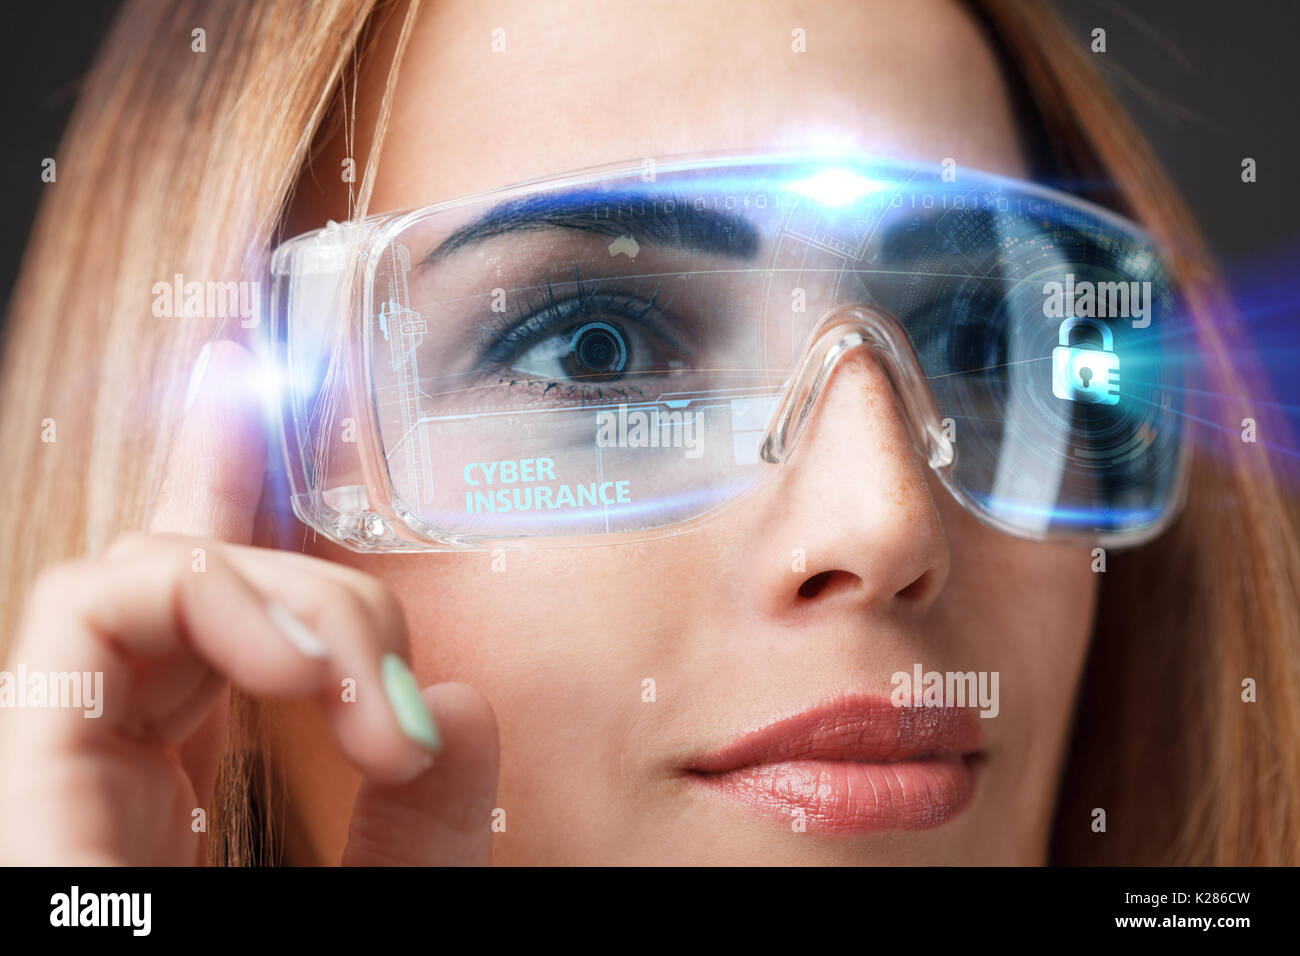 Le commerce, la technologie, Internet et réseau concept. L'avenir de la technologie. Young businesswoman working in lunettes virtuelle, sélectionnez l'icône de l'assurance cybernétique Banque D'Images